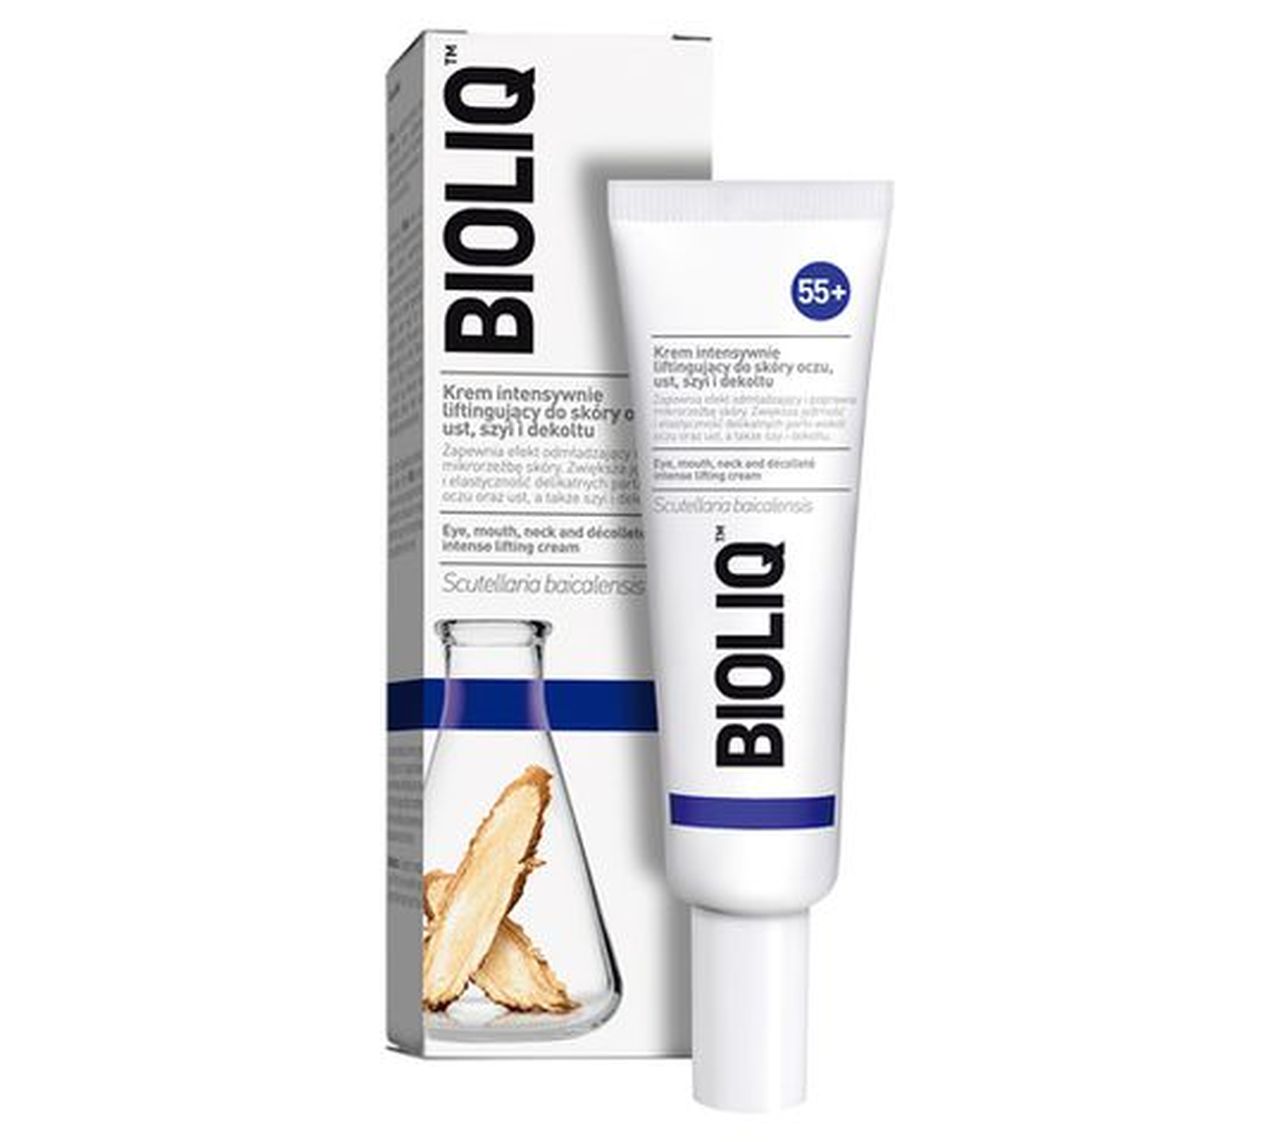 Bioliq 55+ krem intensywnie liftingujący do skóry oczu ust szyi i dekoltu (30 ml)